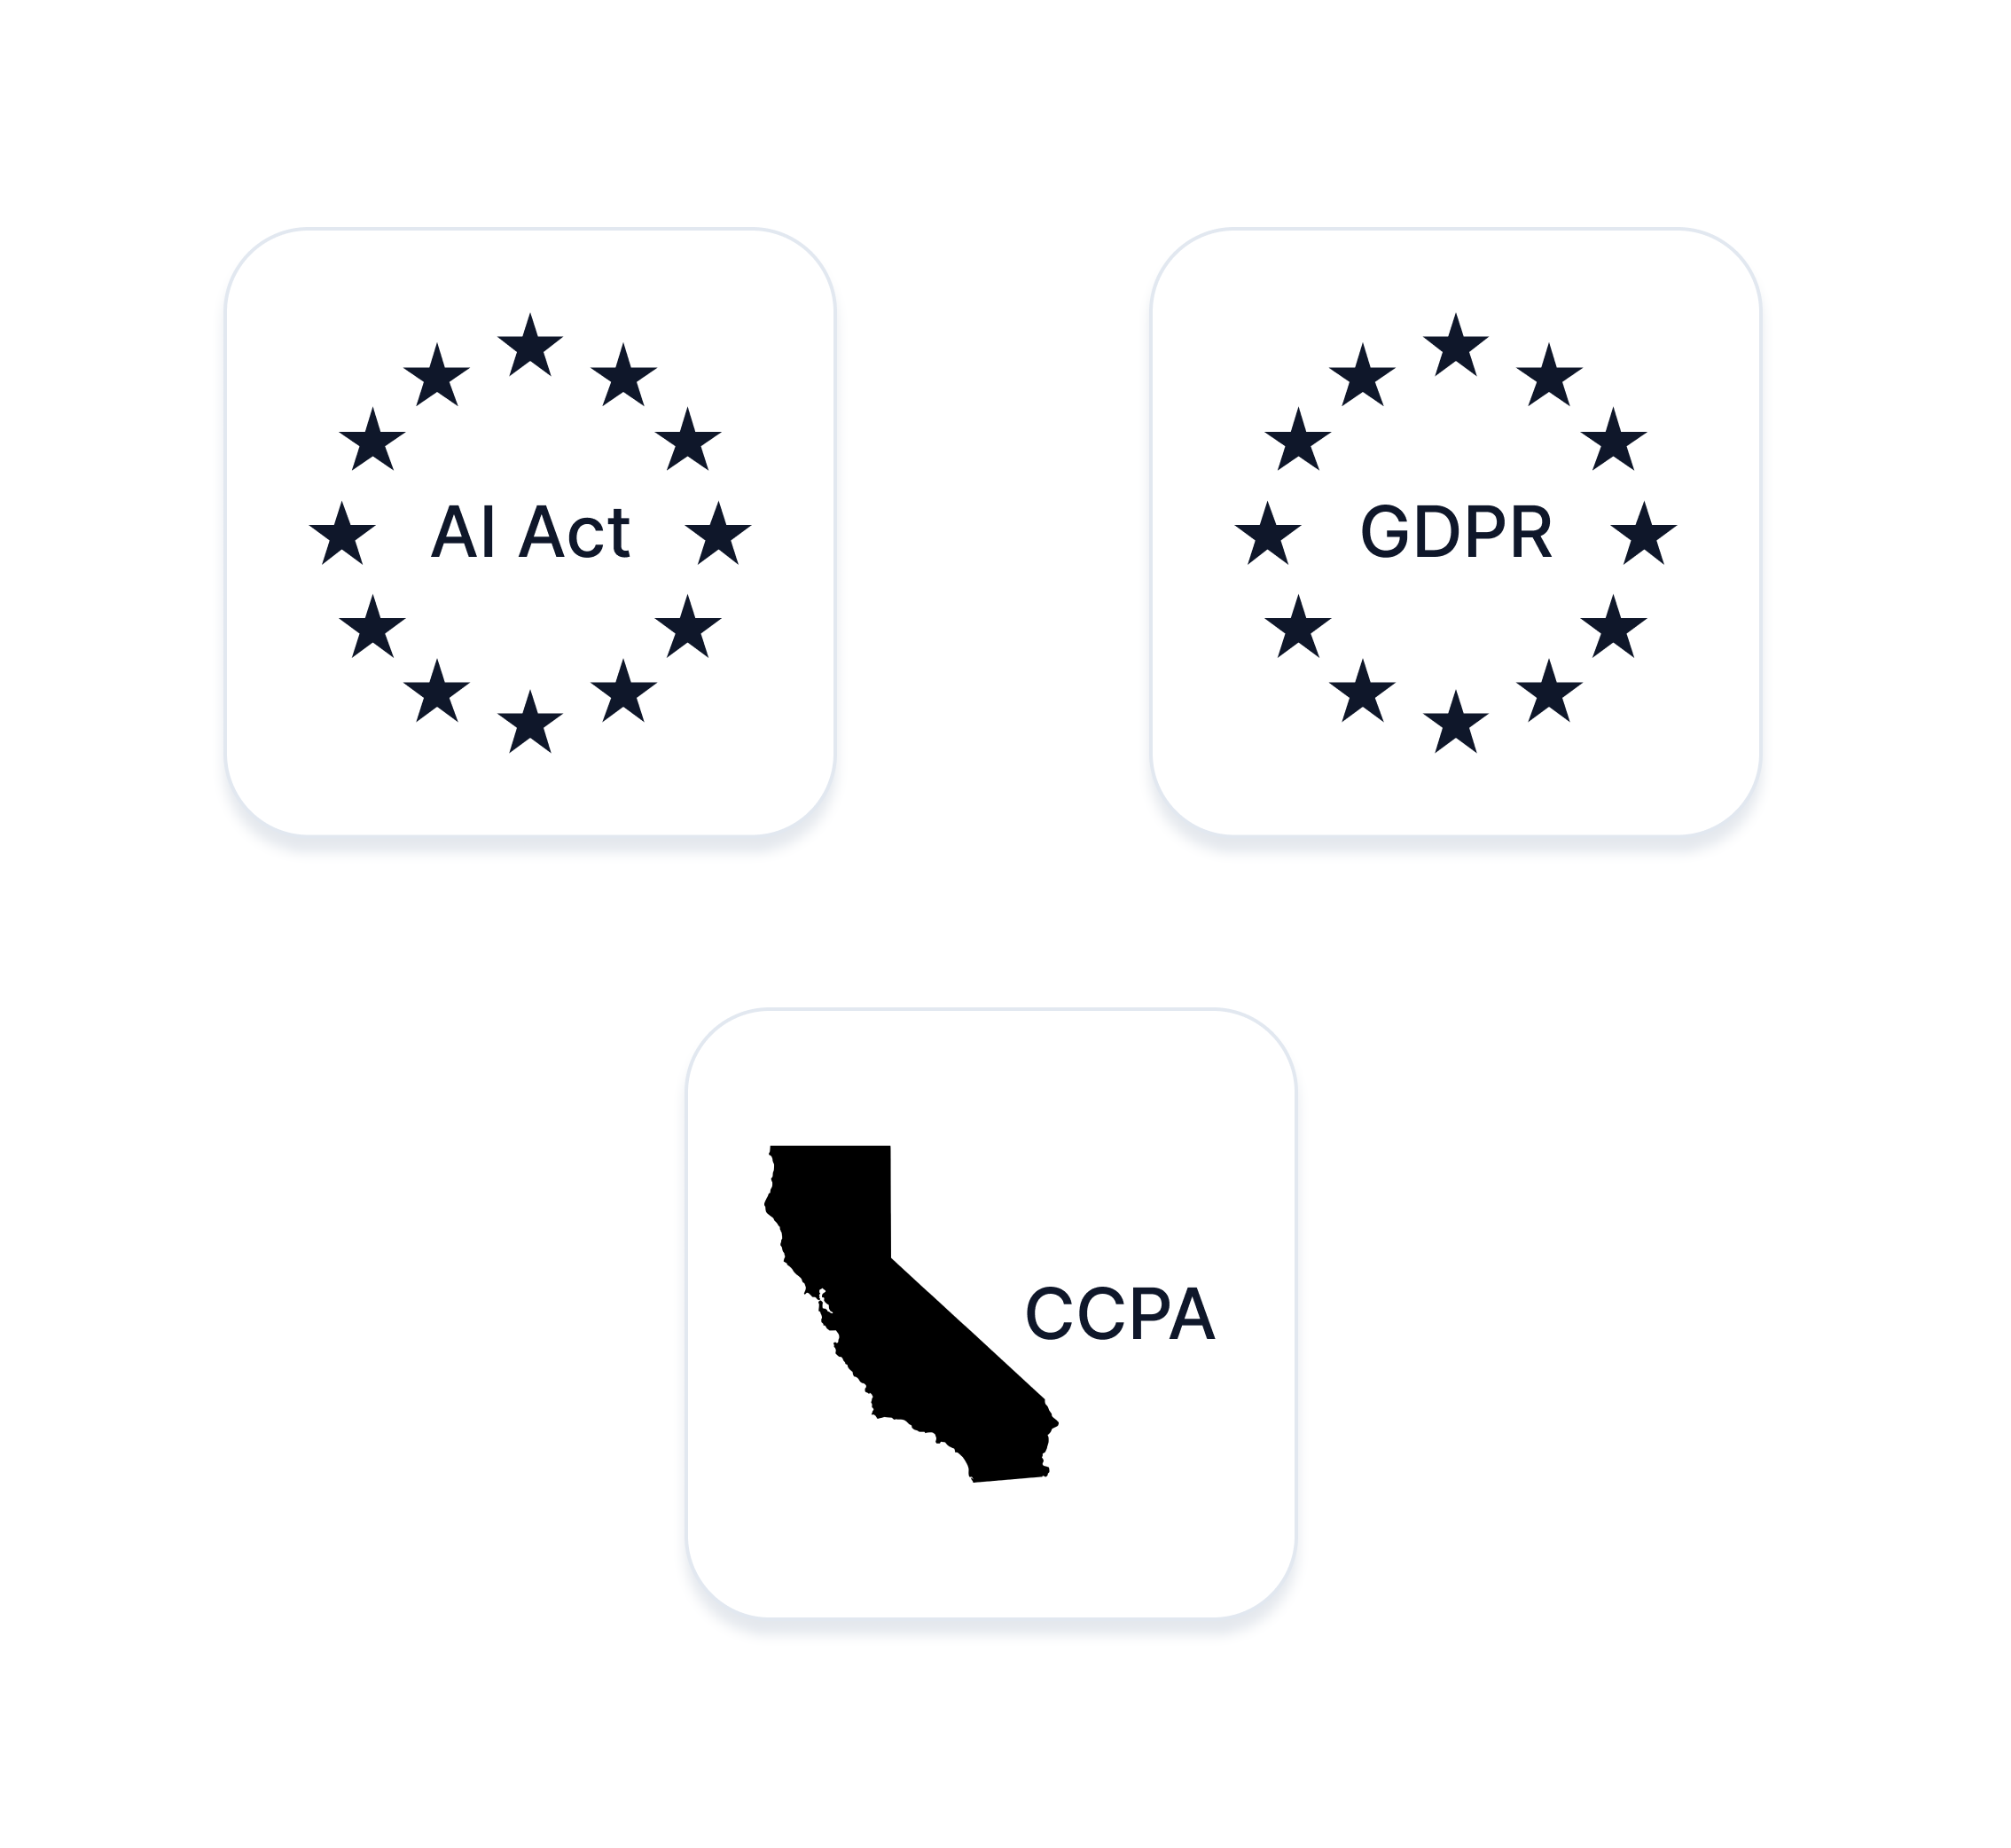 Logos of EU AI act, GDPR, and CCPA